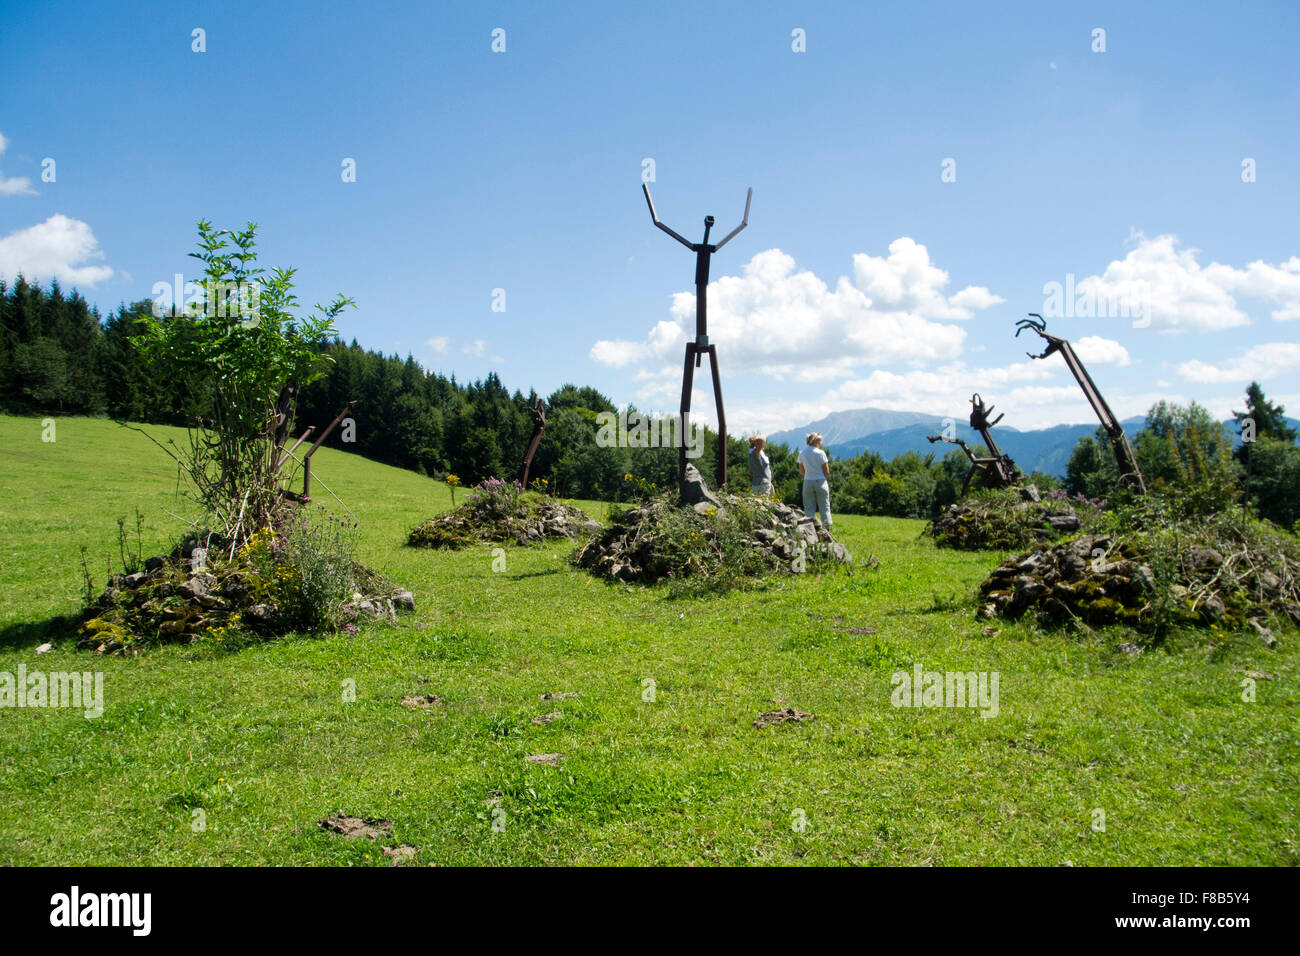 Österreich, Niederösterreich, Hochschlag, Sclavinia von Miguel Horn, auf einer Weide steht diese installazione, die an die frühe Foto Stock